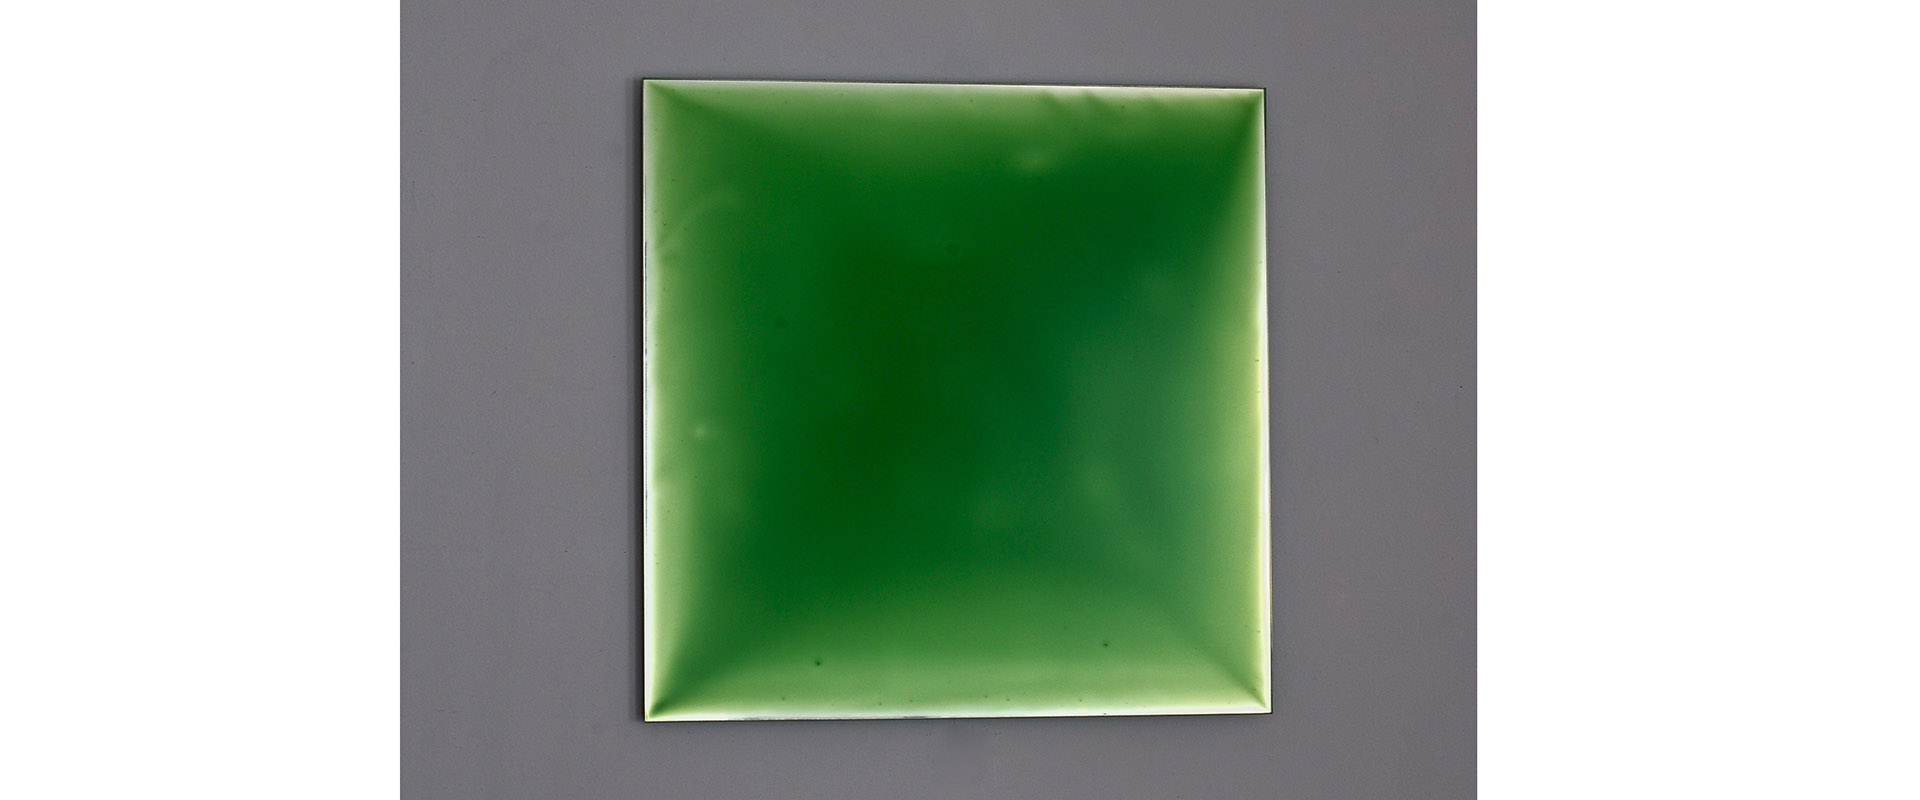 NUMEN #III-BLAU-GRÜN X - 2020, Pigment, Lack auf verspiegeltem Glas, 30 x 30 cm